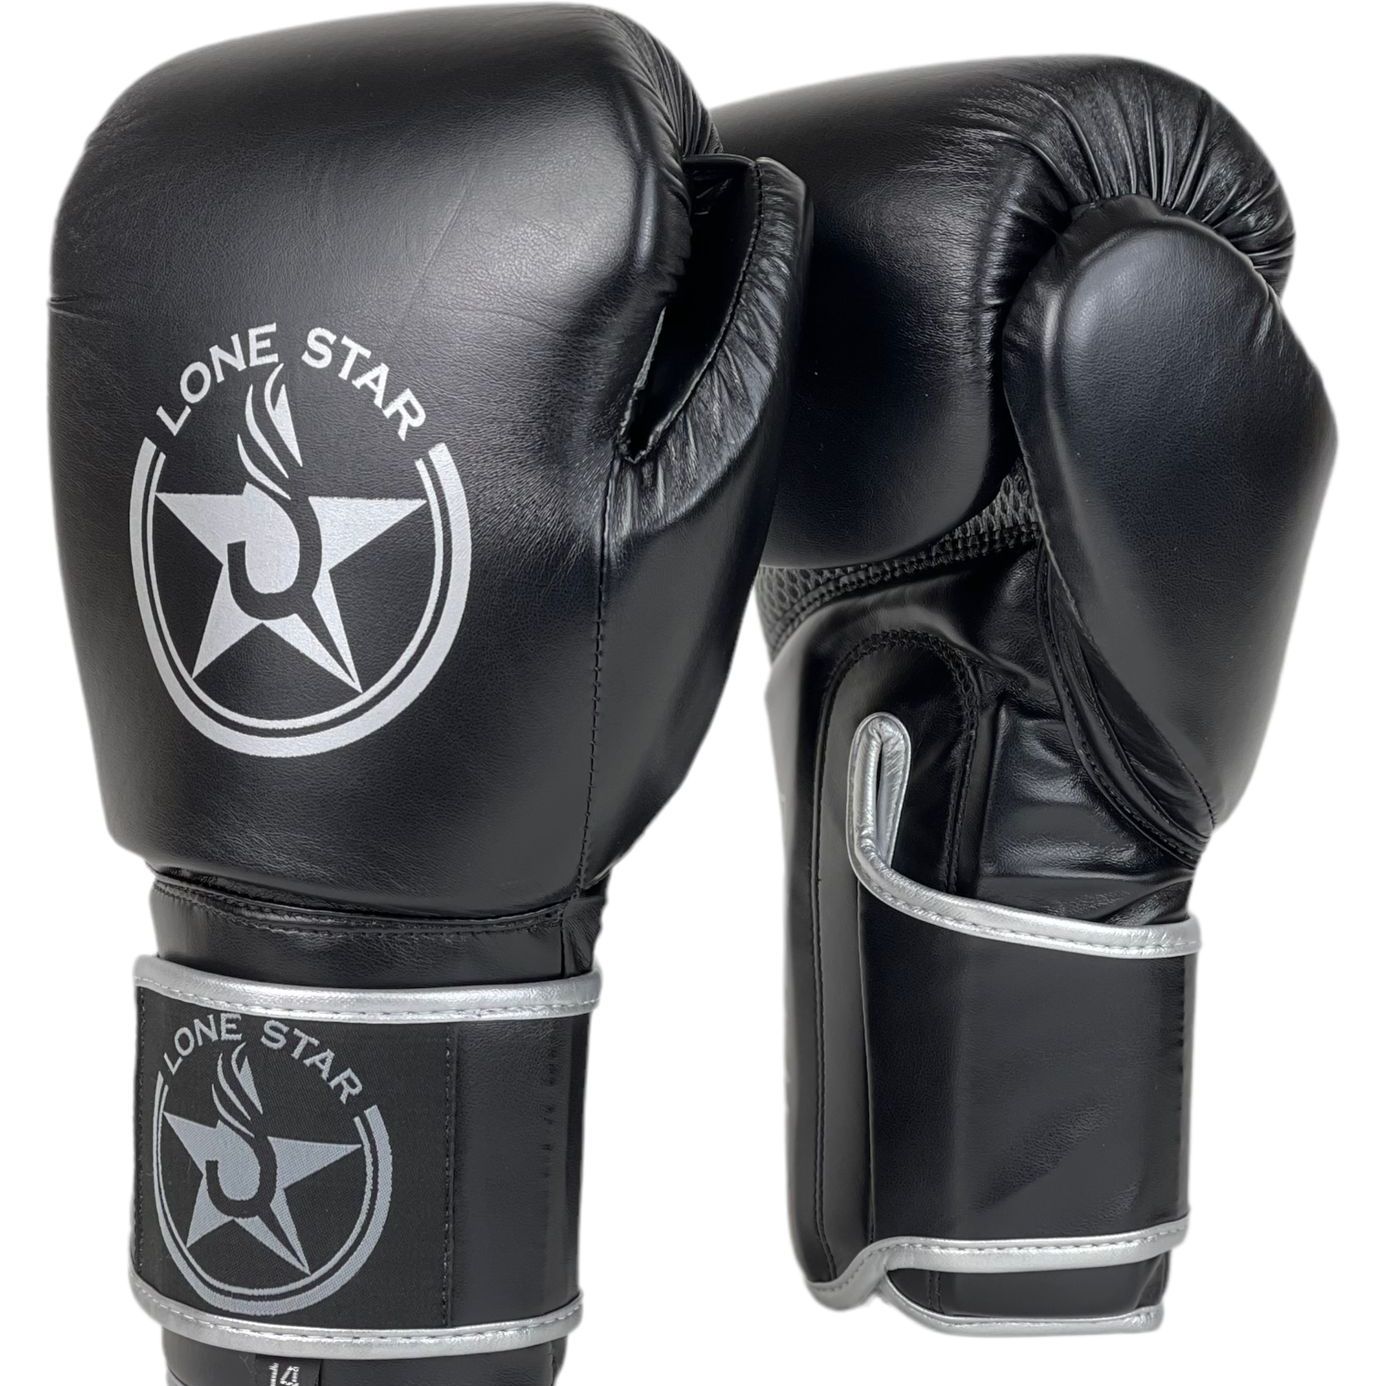  Боксерские перчатки LONE STAR ROOKIE черные 